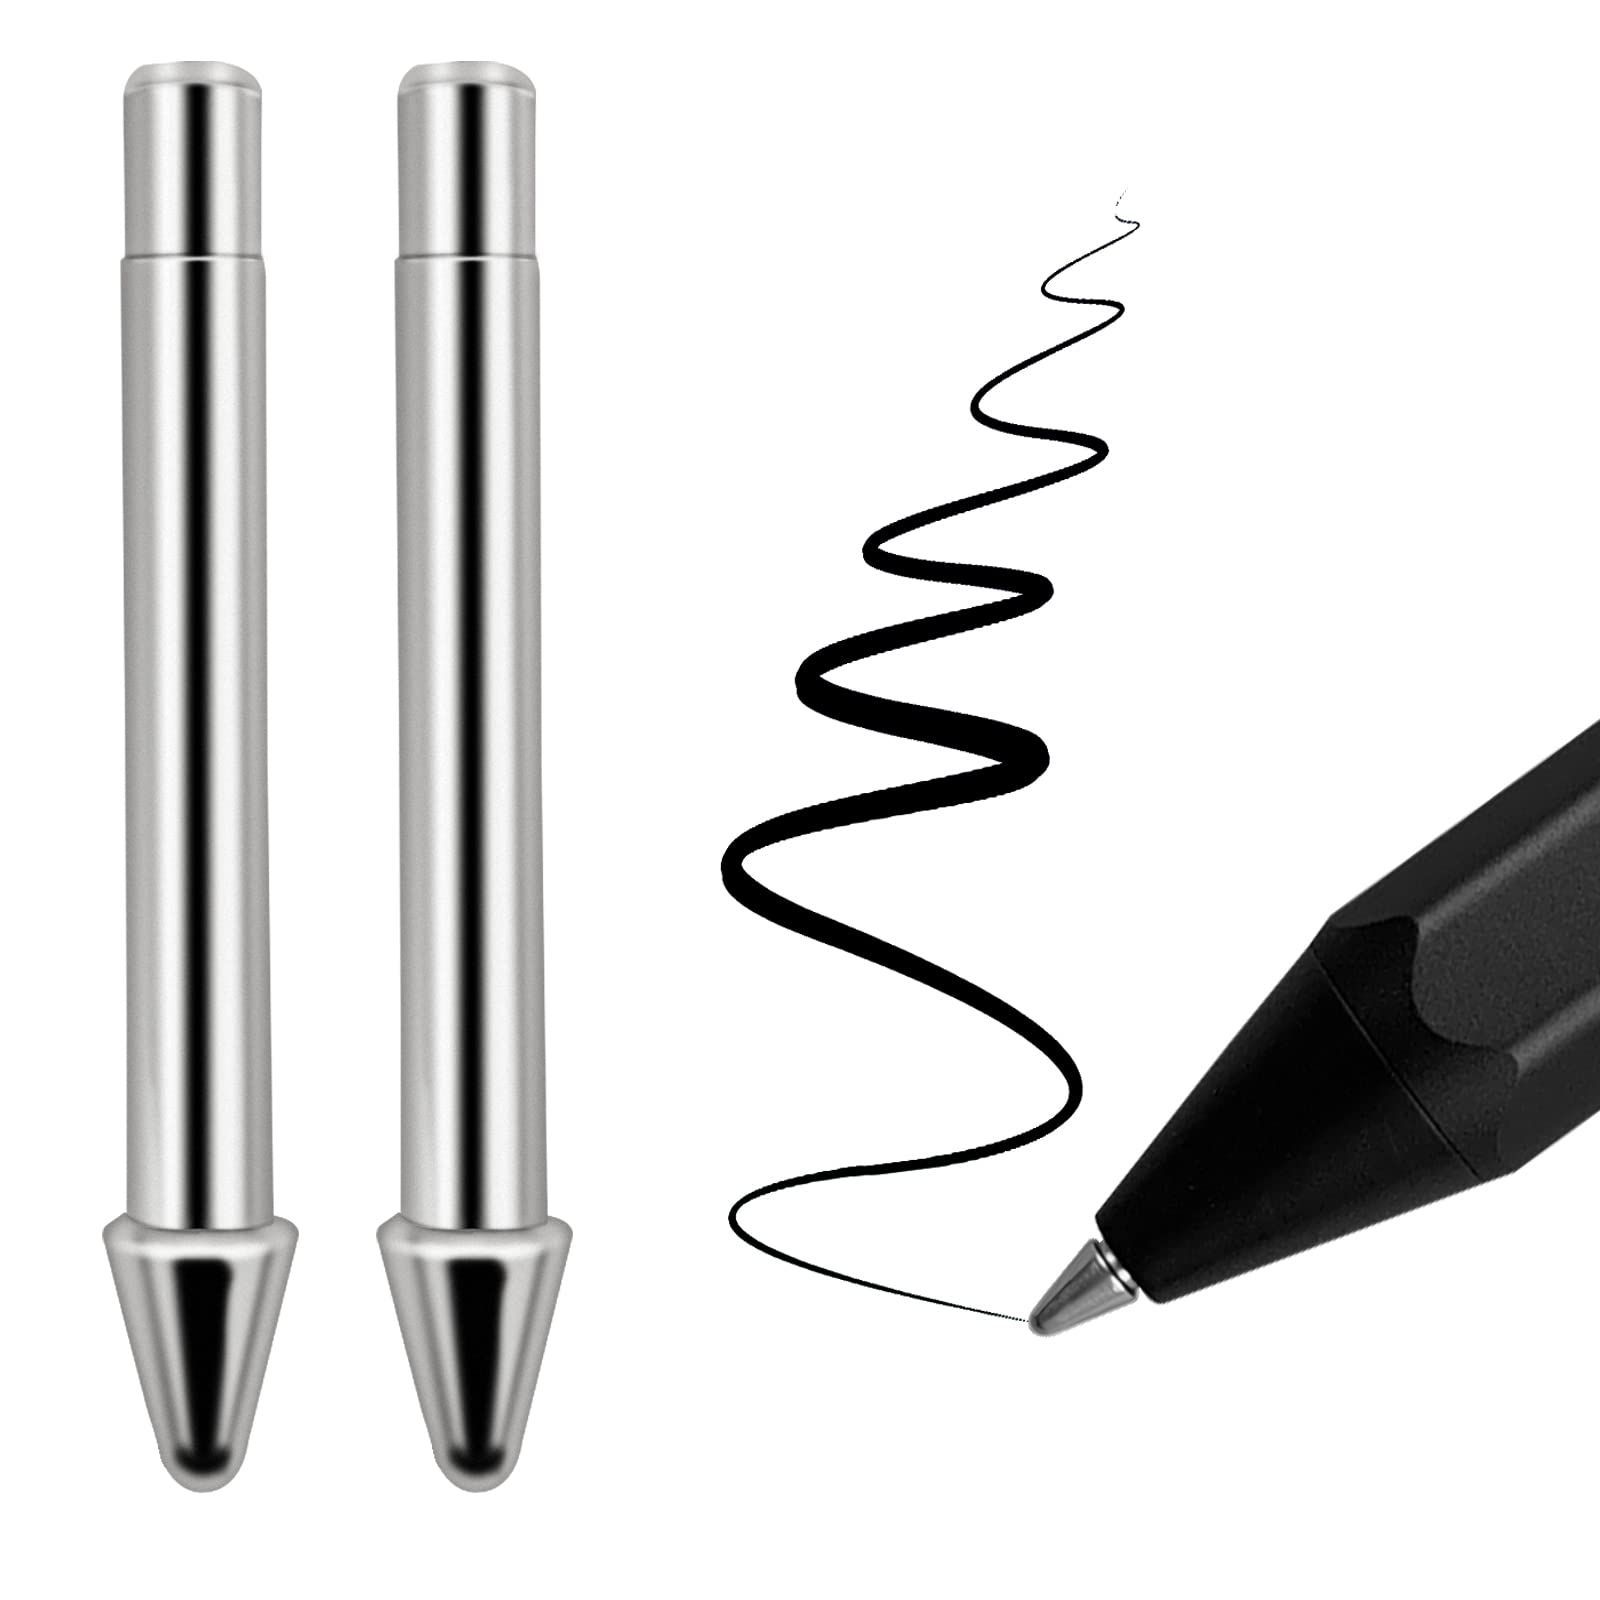 摩耗しないチタン合金ペンチップ Surface Pen用 Realititcsペンのよう ...